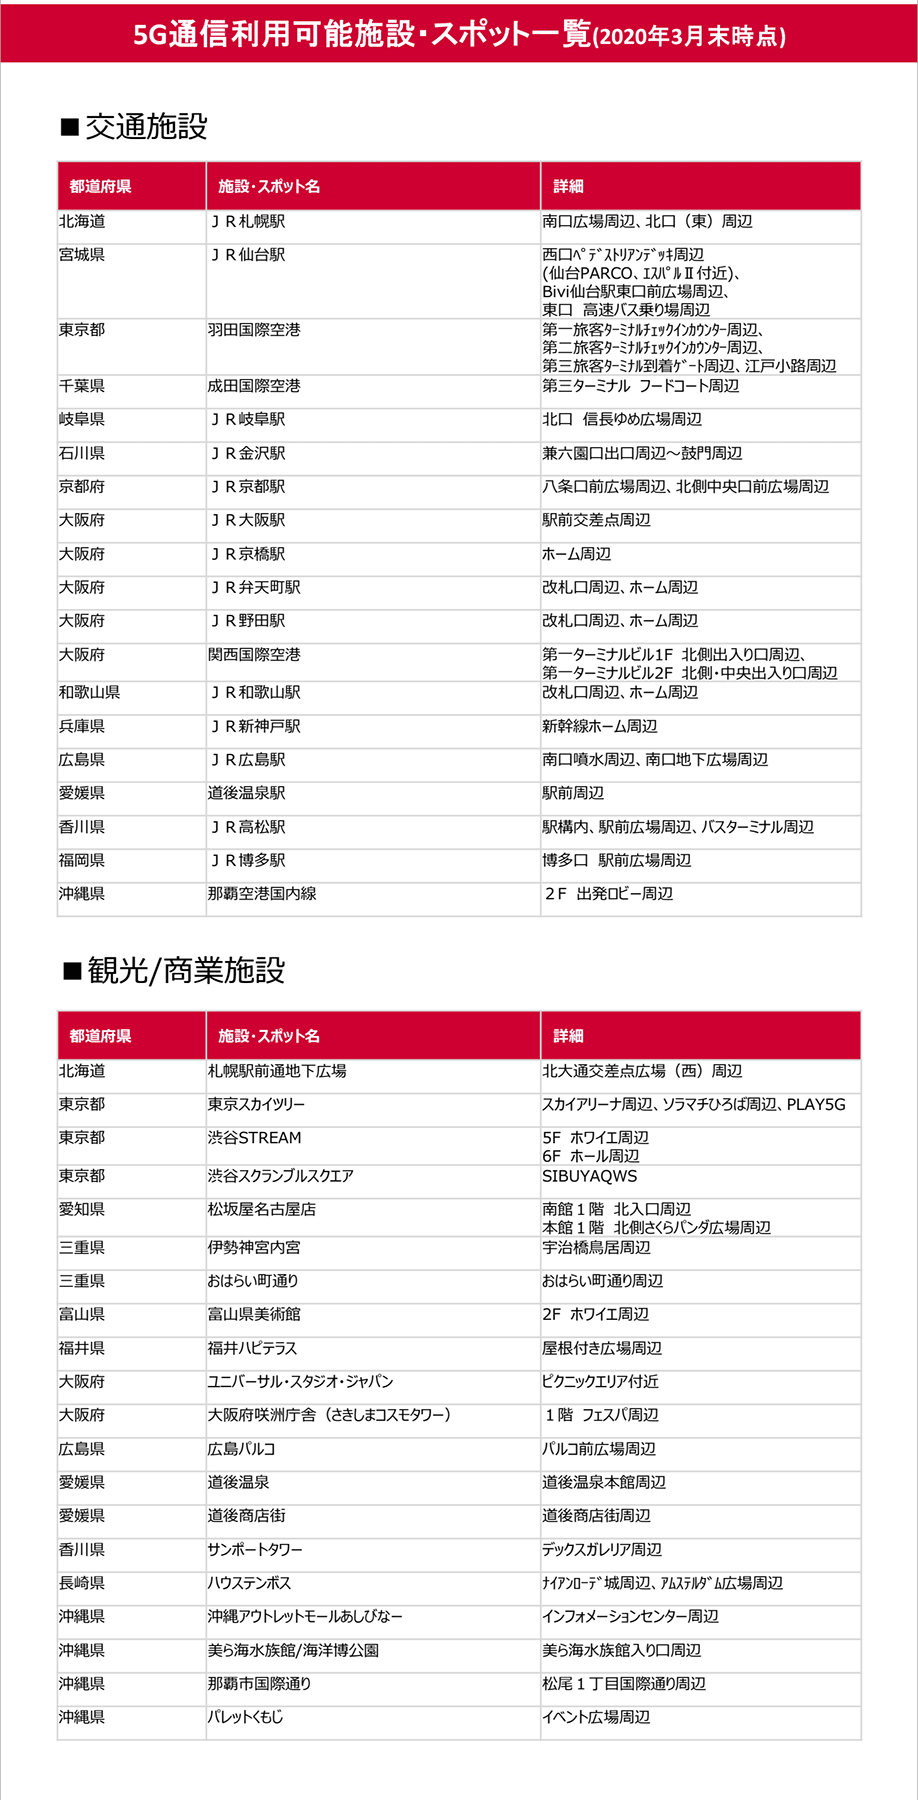 ドコモ 5gが使えるスポット一覧を公開 5g提供エリアは当初限定的 と注意書き Engadget 日本版